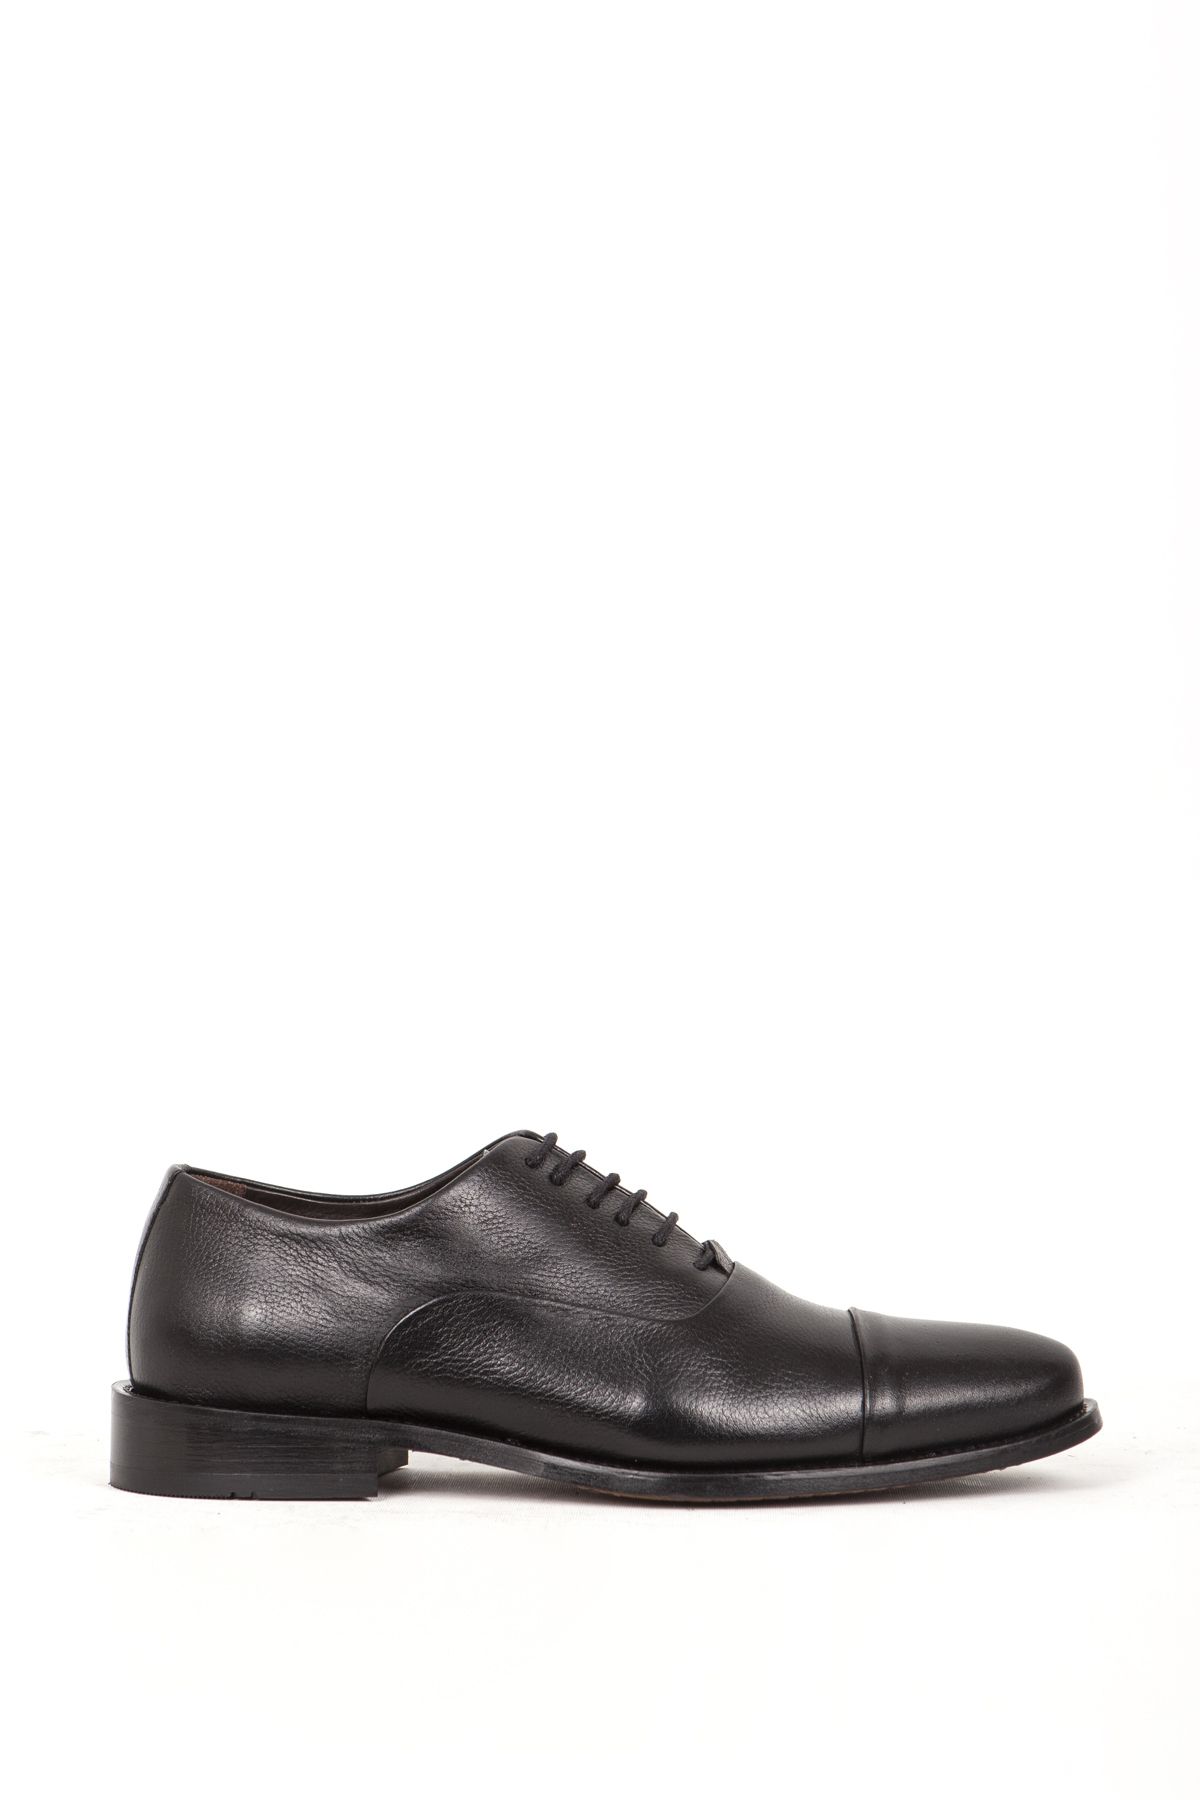 DANACI 368 Gerçek Deri Kösele Taban Erkek Klasik Ayakkabı Siyah